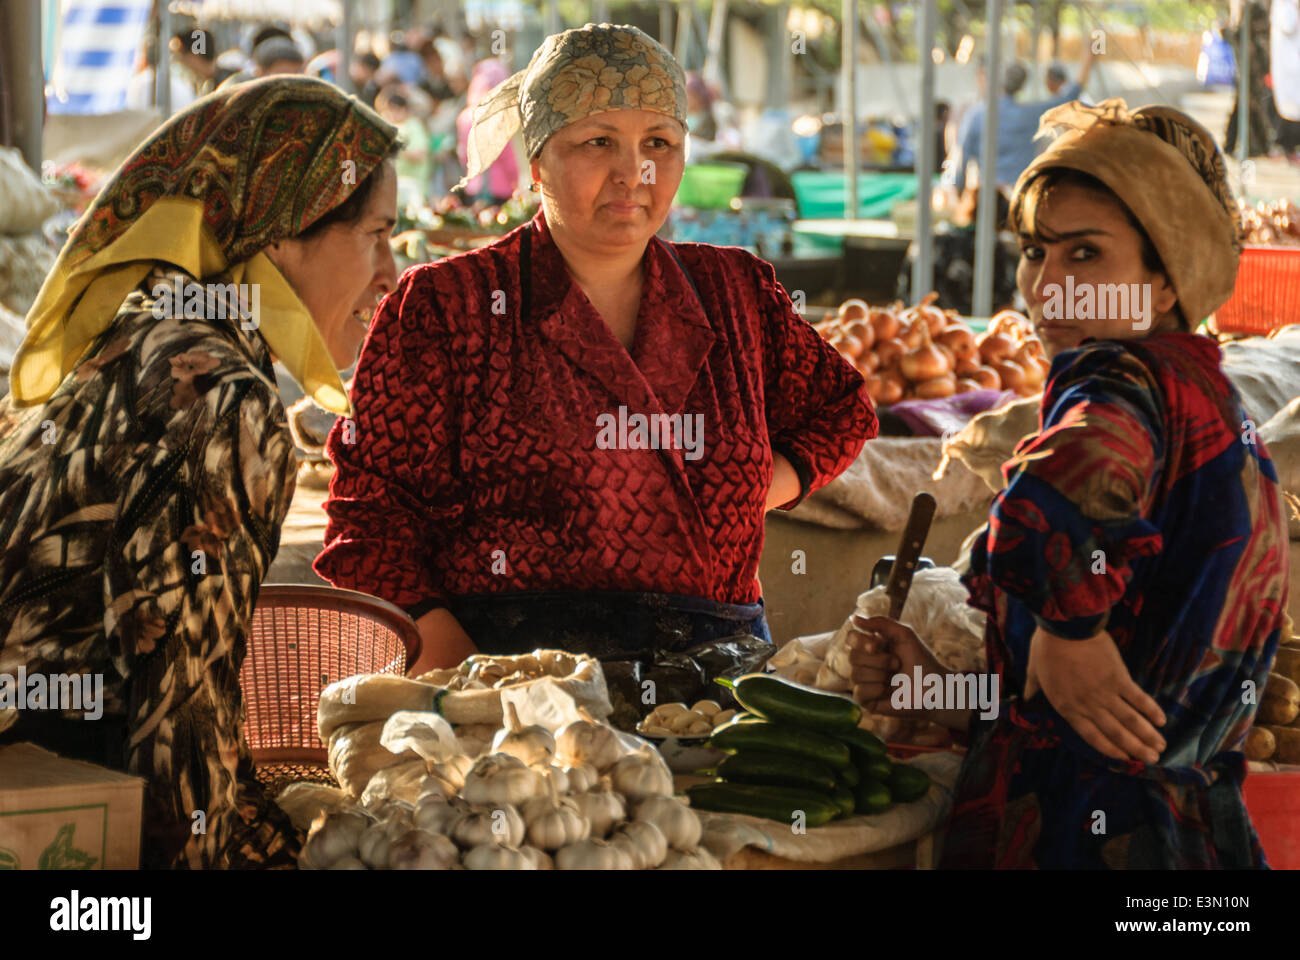 Le donne che vendono merci in un mercato di strada, Tashkent, Uzbekistan in Asia centrale Foto Stock